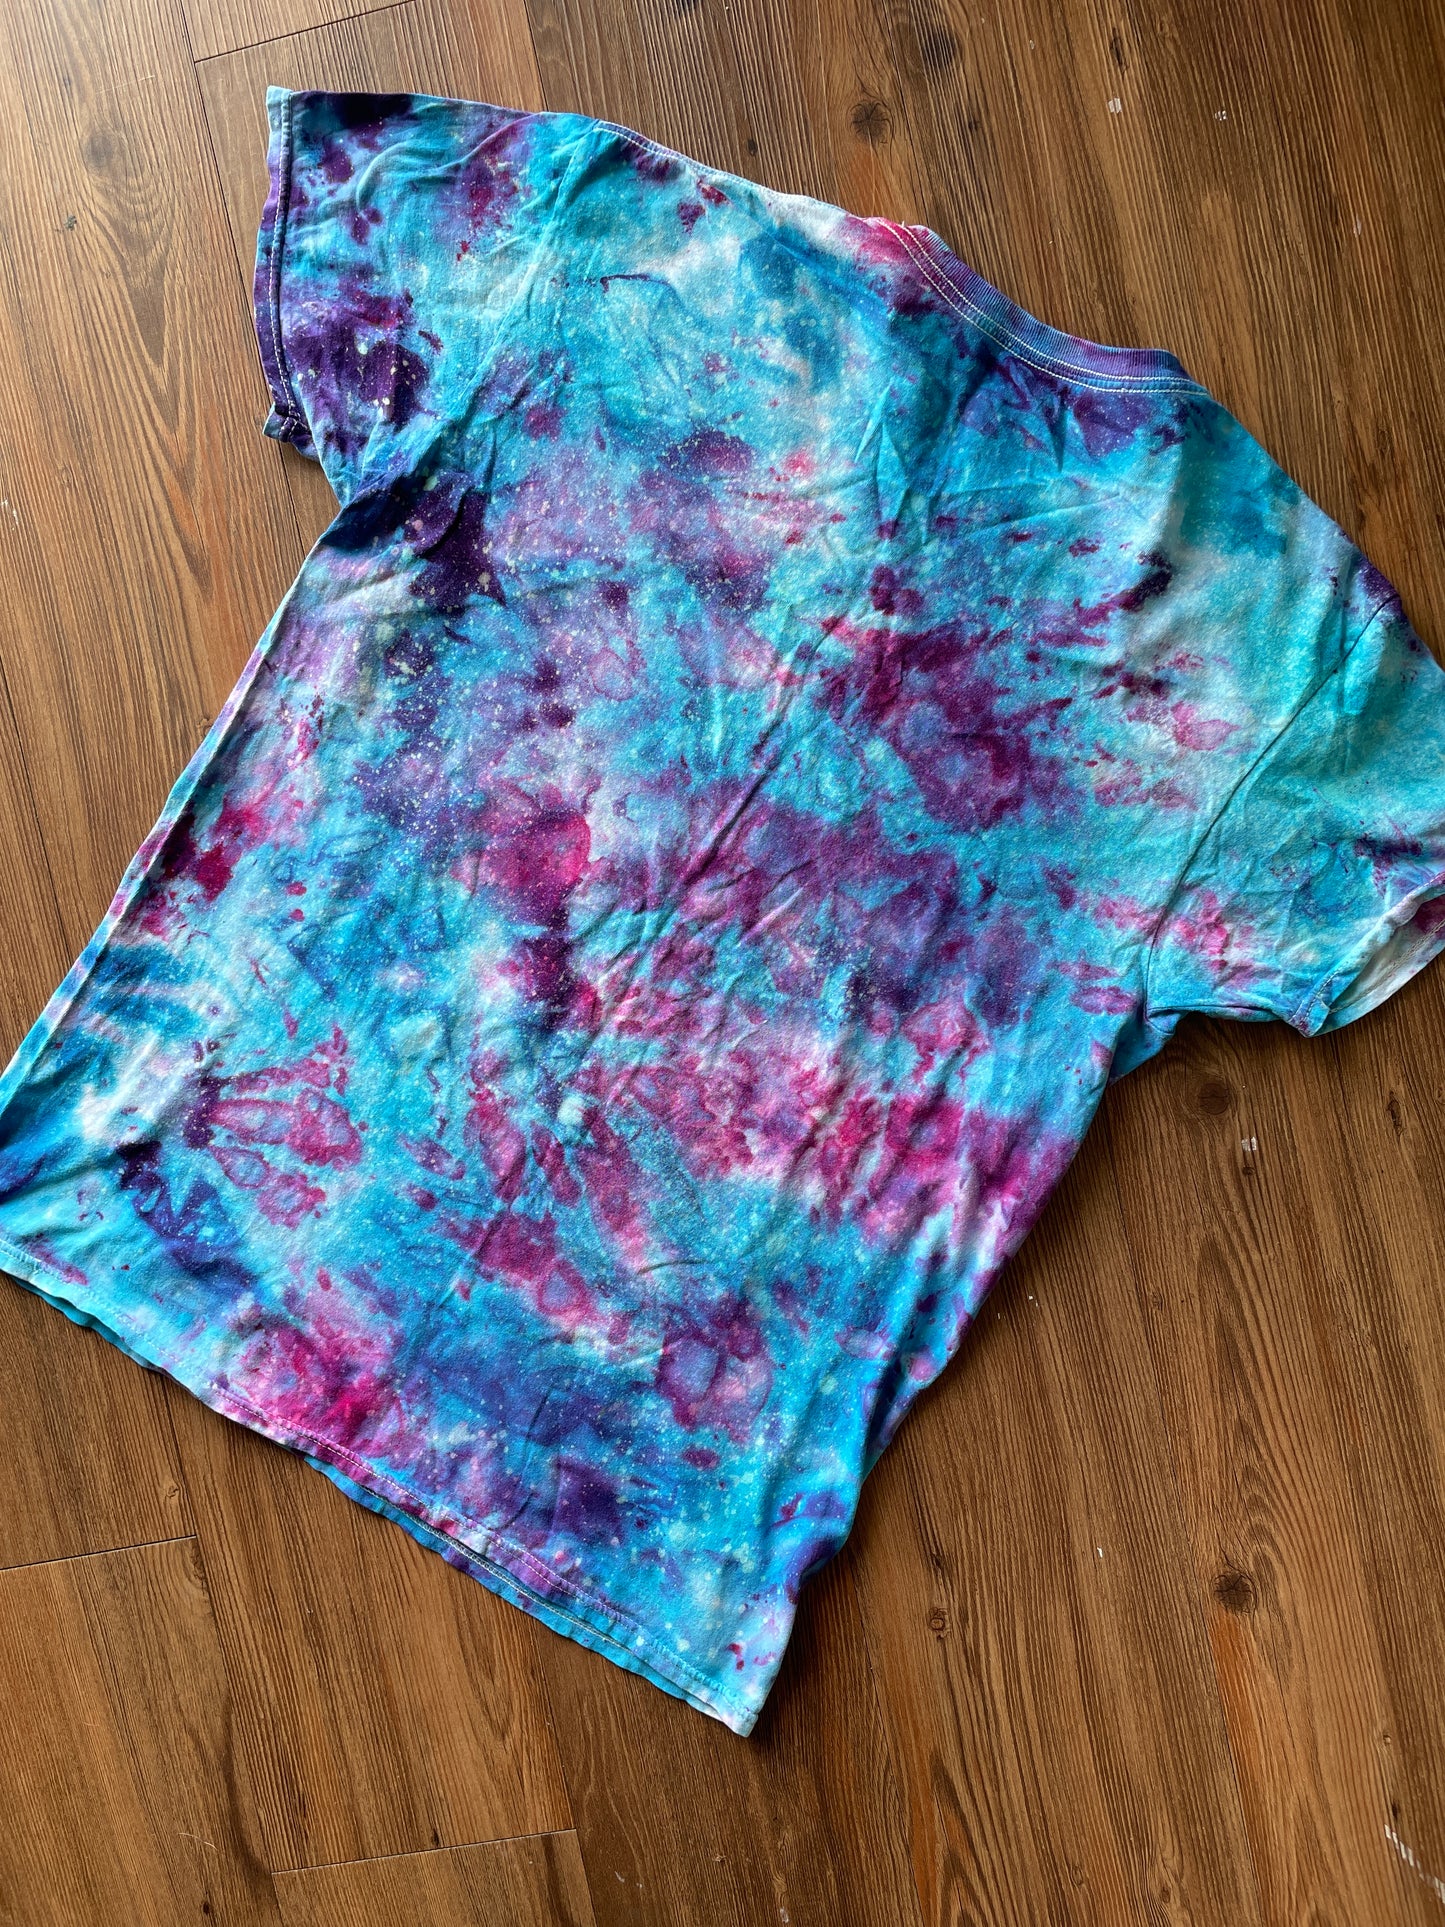 Large Men’s Galaxy Dye Tie Dye T-Shirt | Blue and Purple Space Ice Dye Tie Dye Short Sleeve